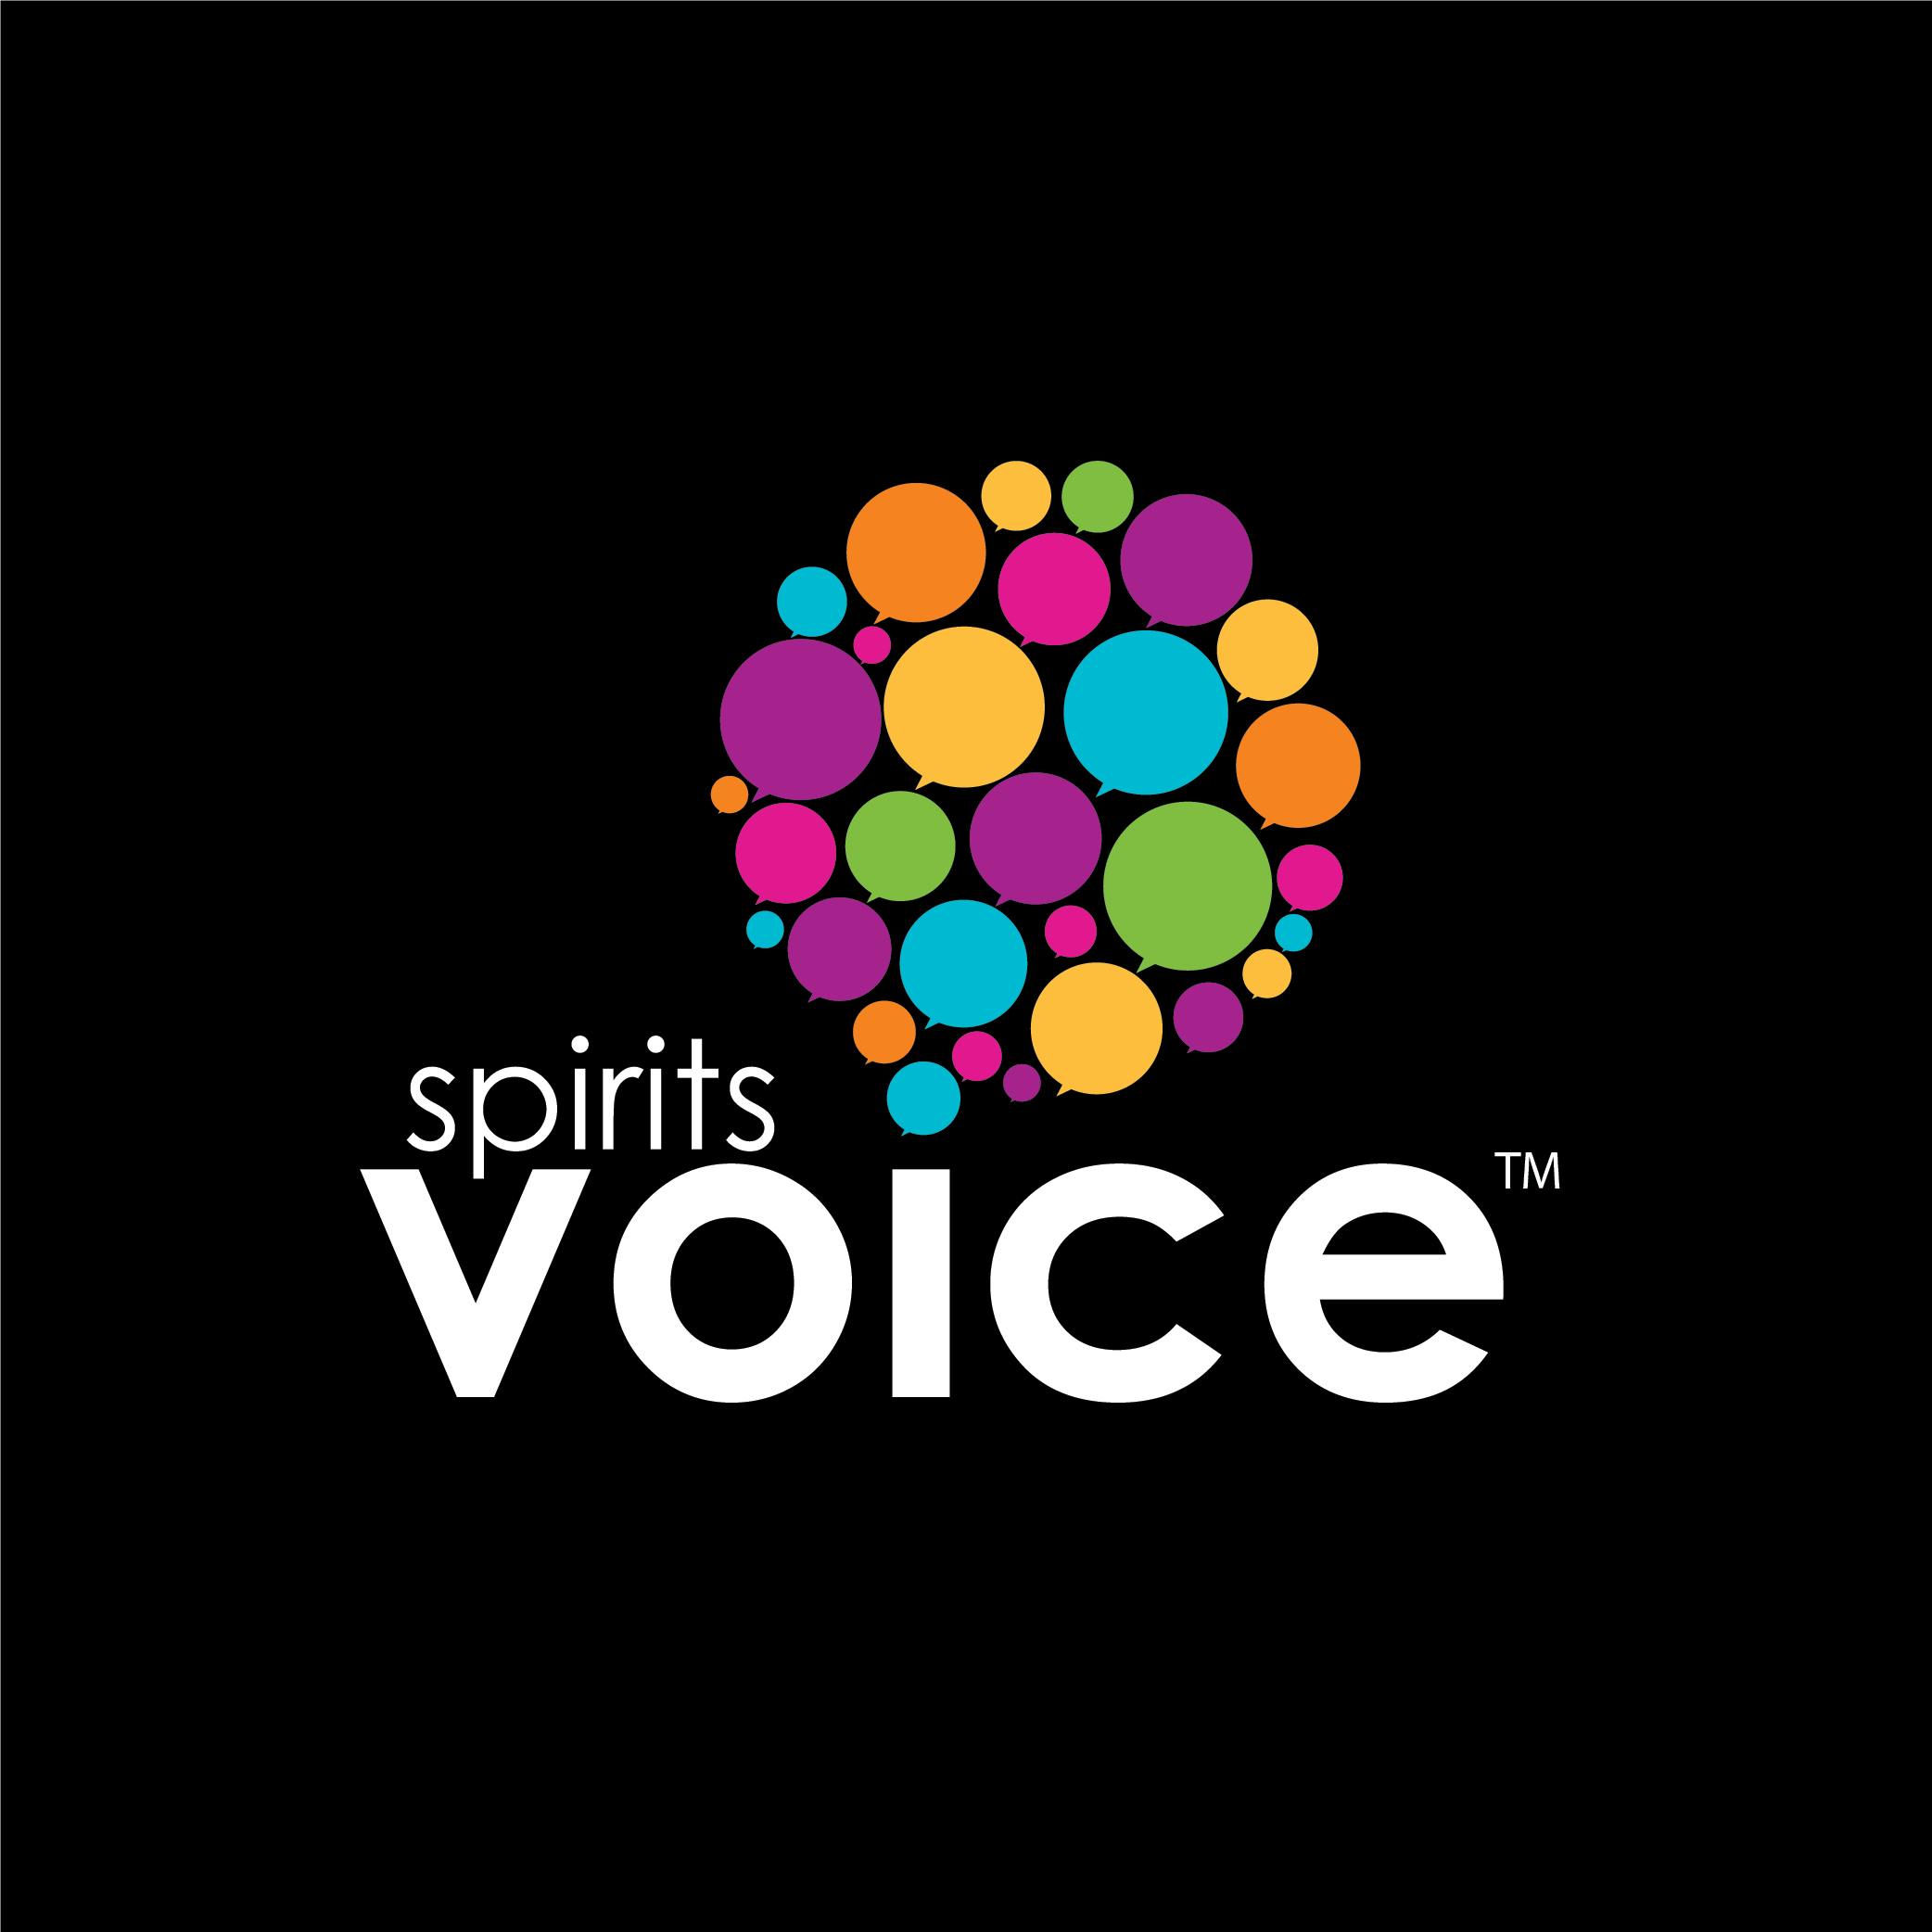 Spirits voice